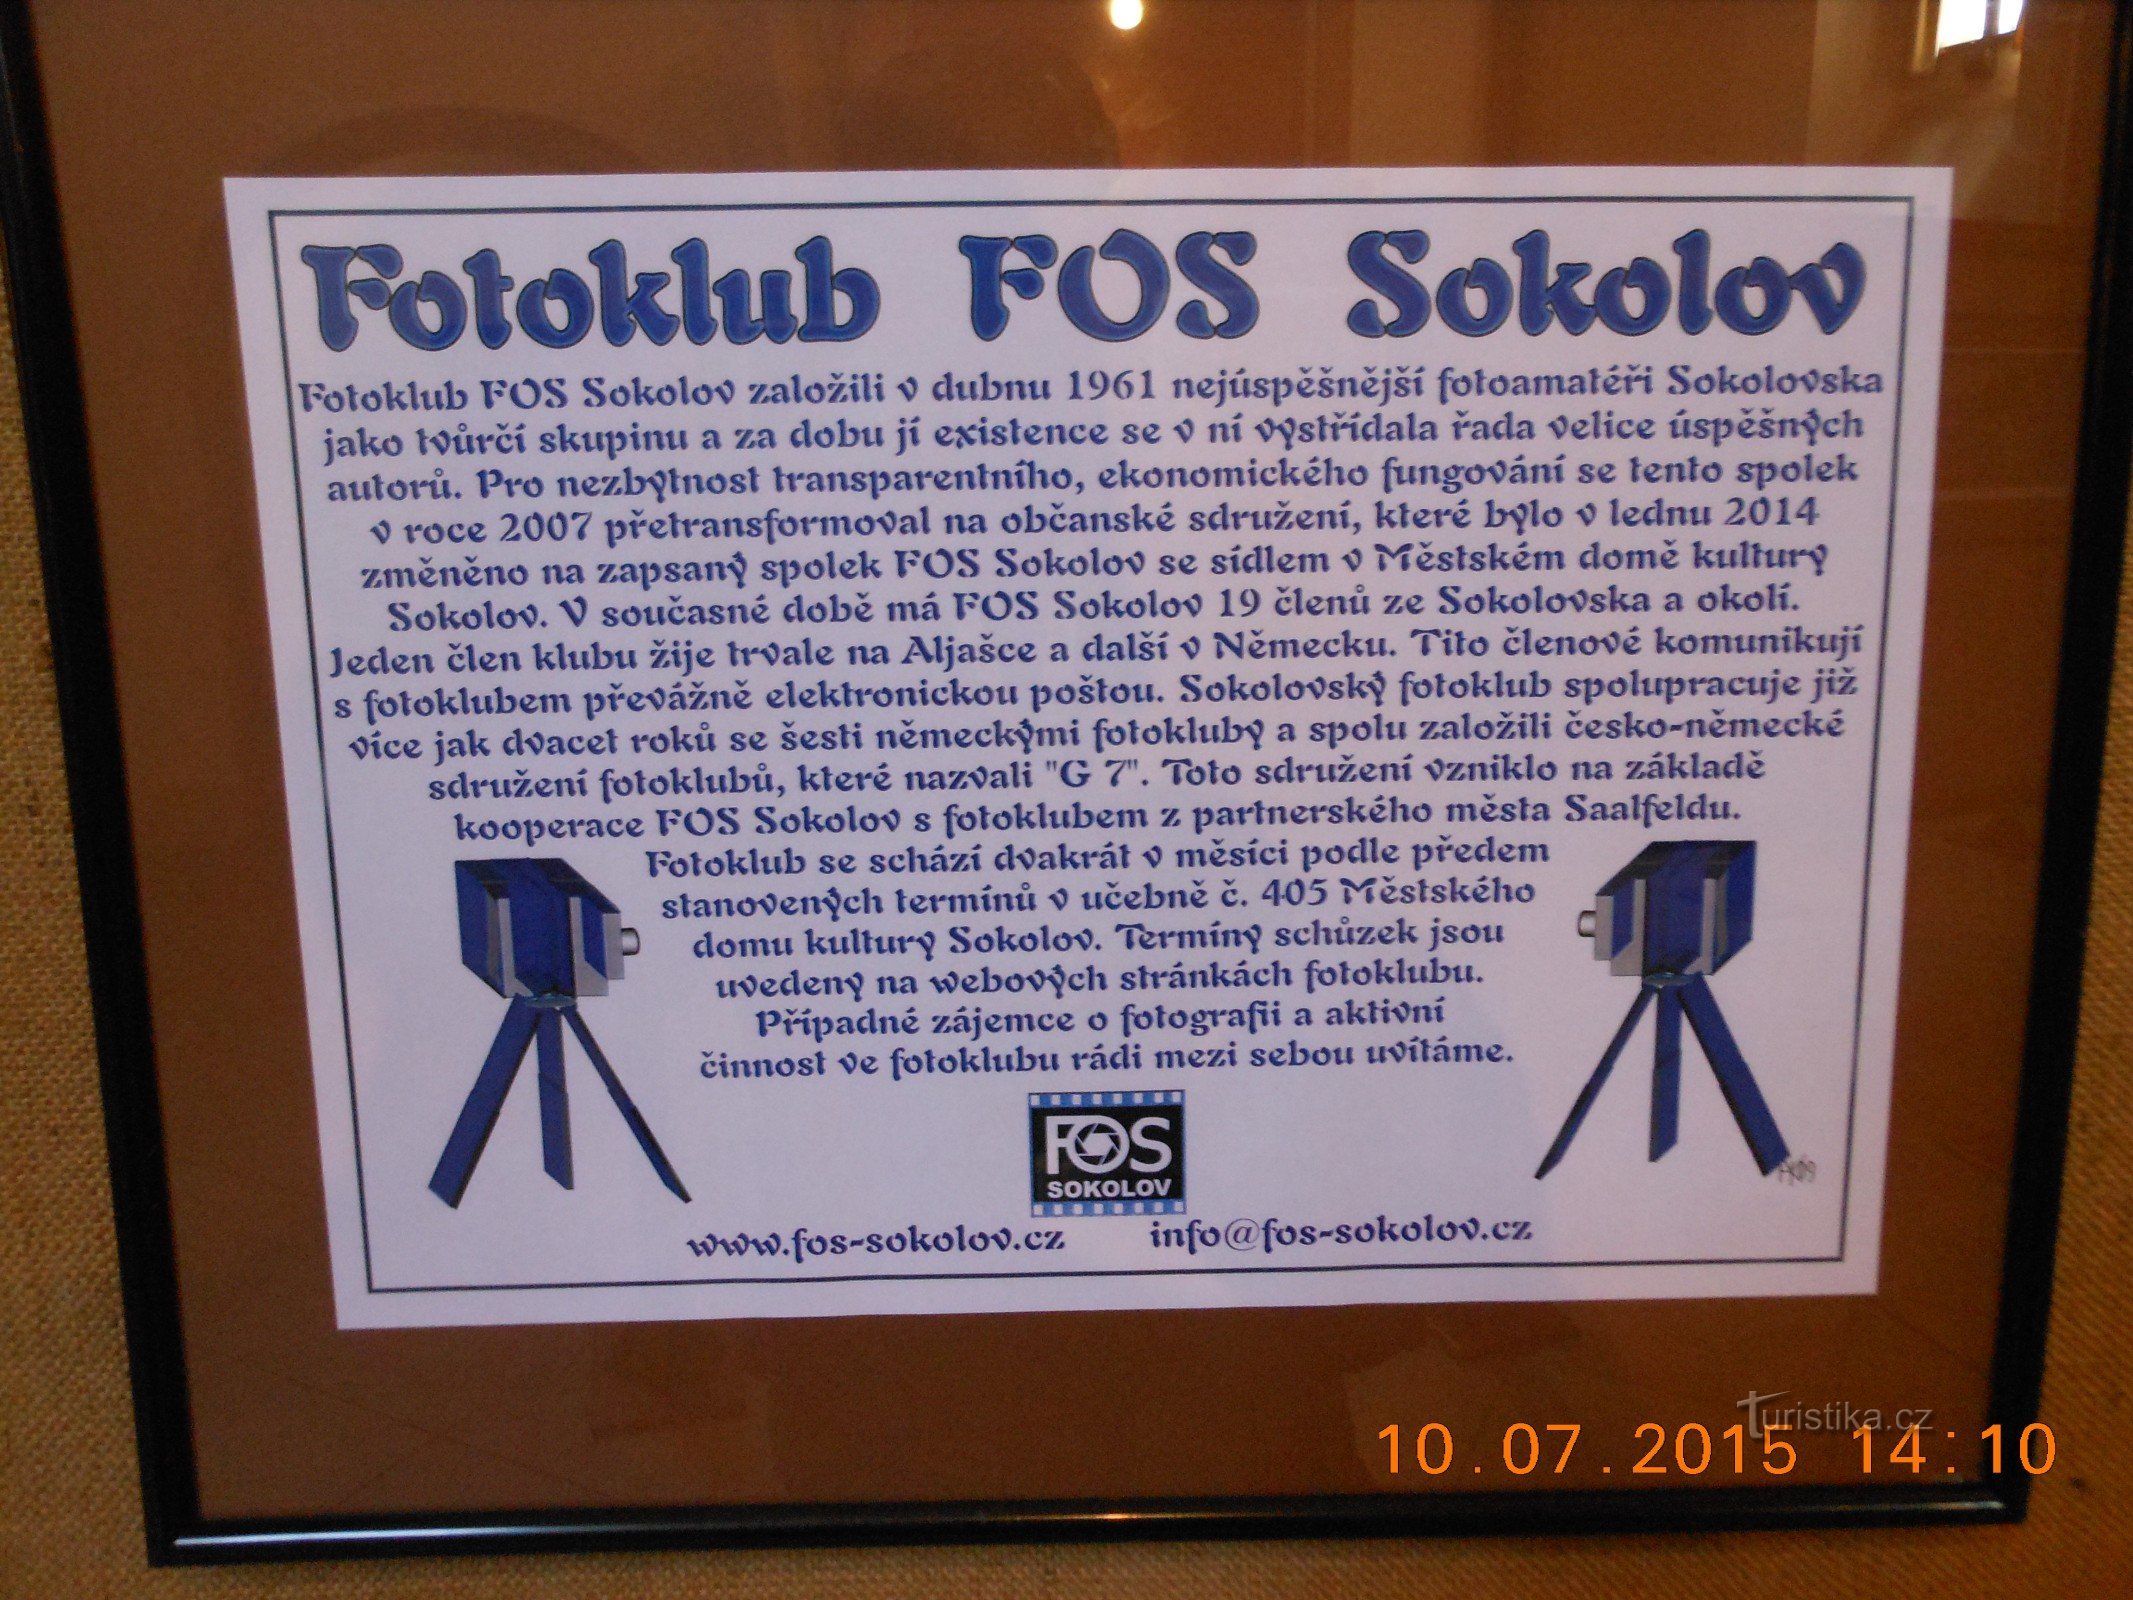 Câu lạc bộ ảnh triển lãm FOS Sokolov - Sokolov